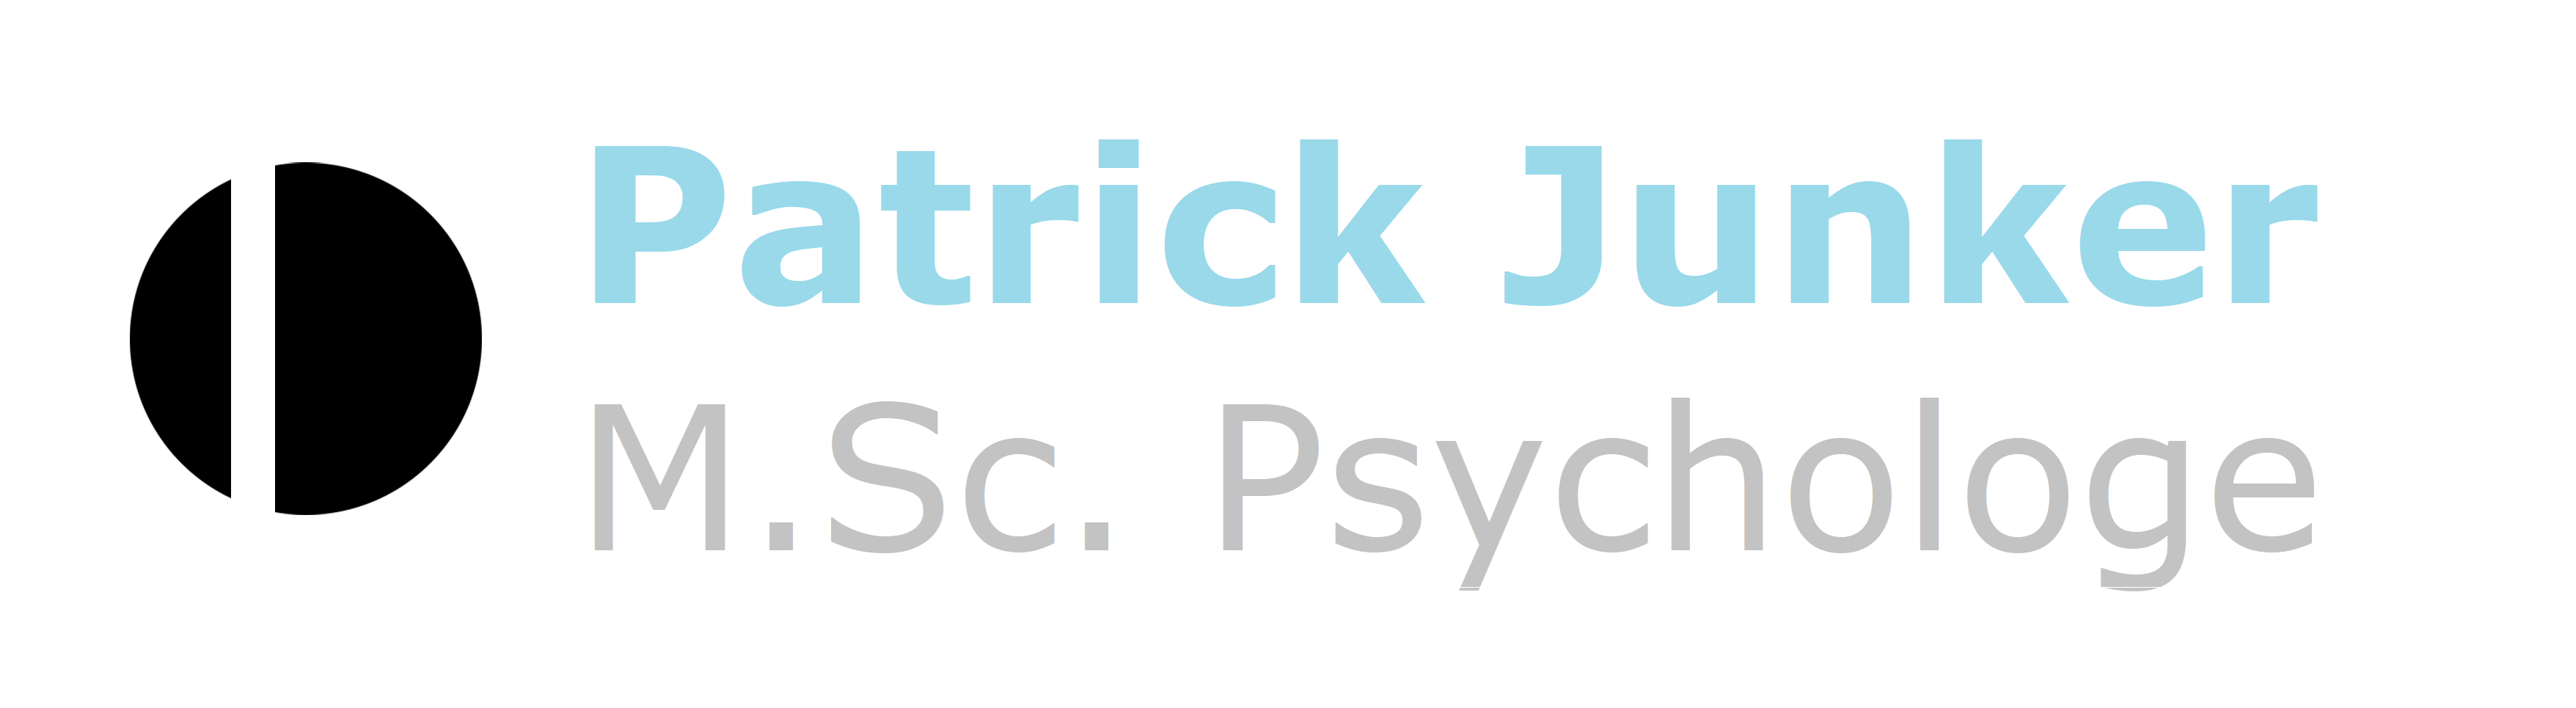 Psychotherapeutische Praxis M.Sc. Patrick Junker | Freiburg im Breisgau